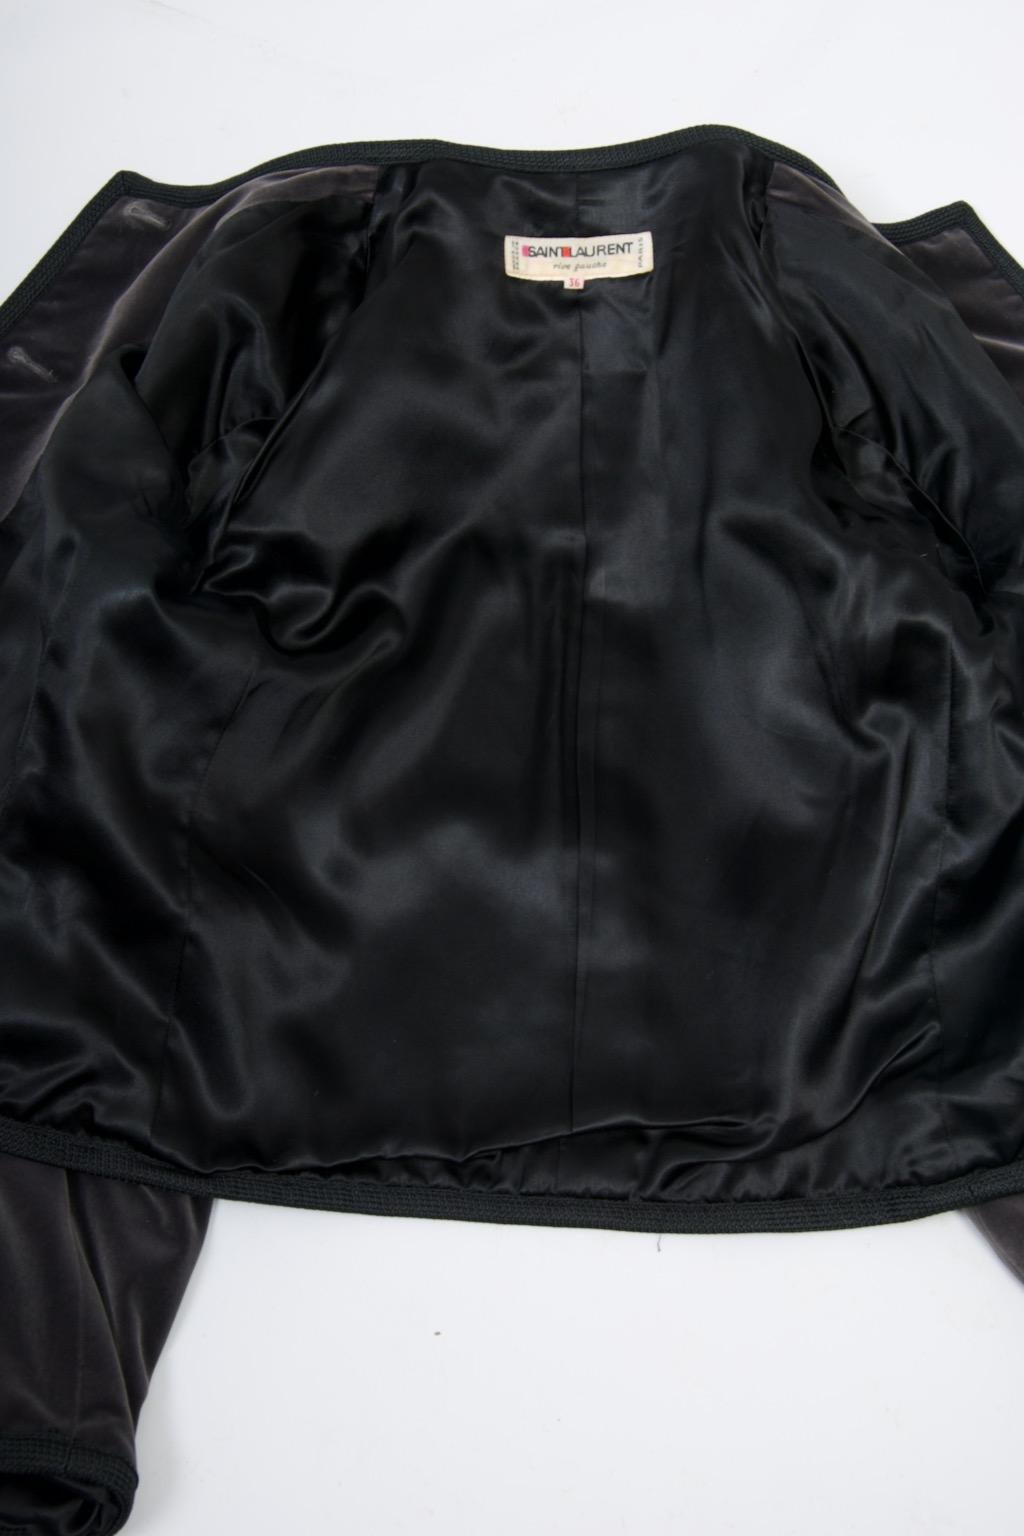 Saint Laurent Gray Velvet Cropped Jacket For Sale 4